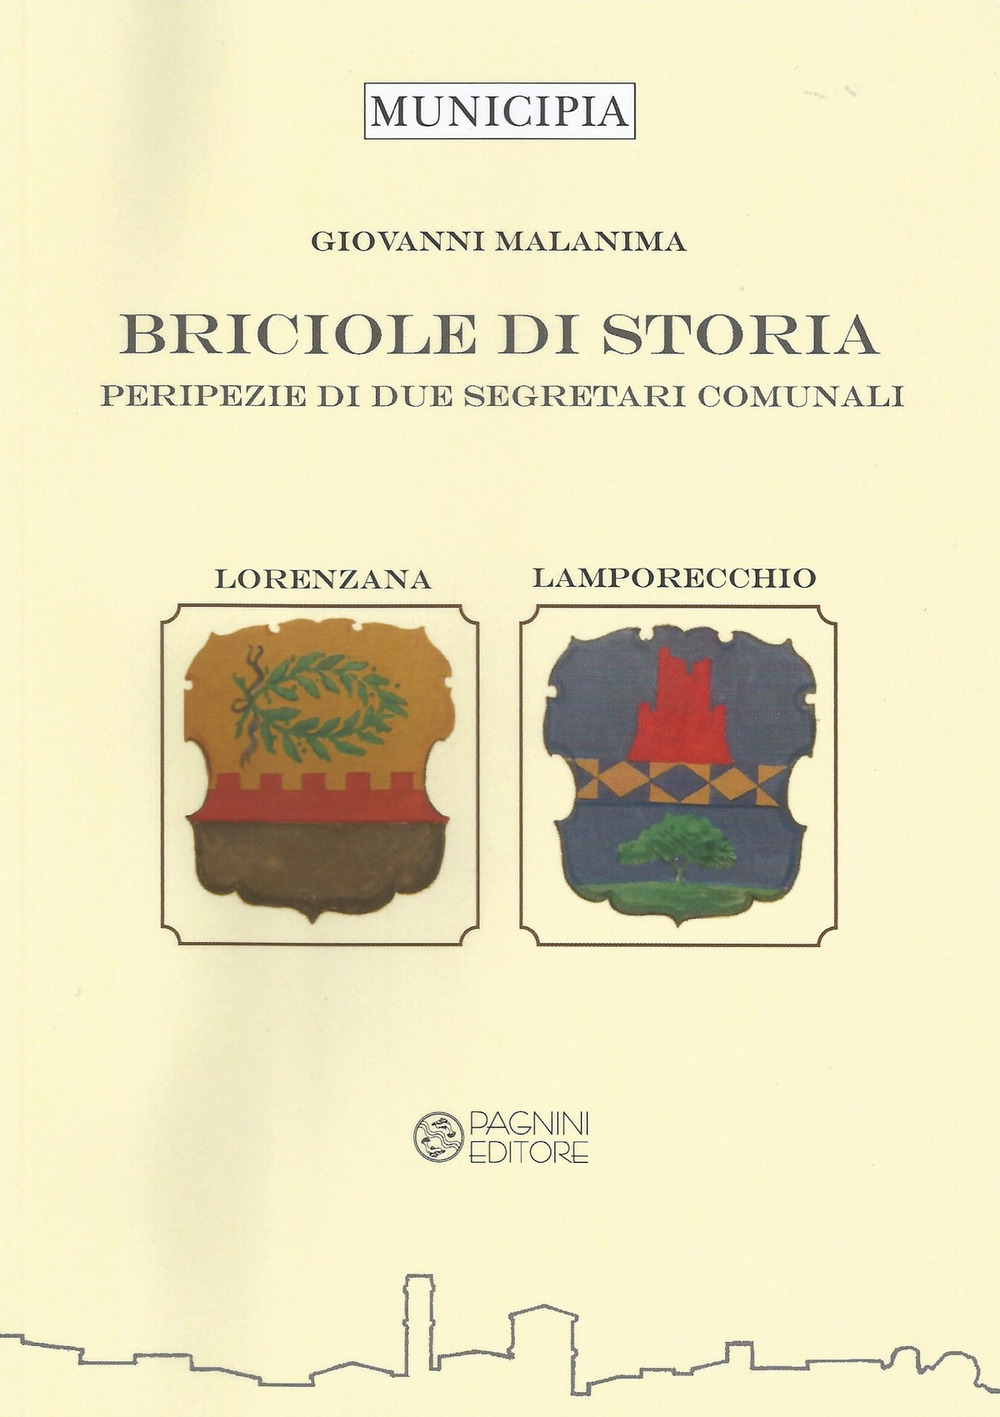 Image of Briciole di storia. Peripezie di due segretari comunali. Lorenzana e Lamporecchio